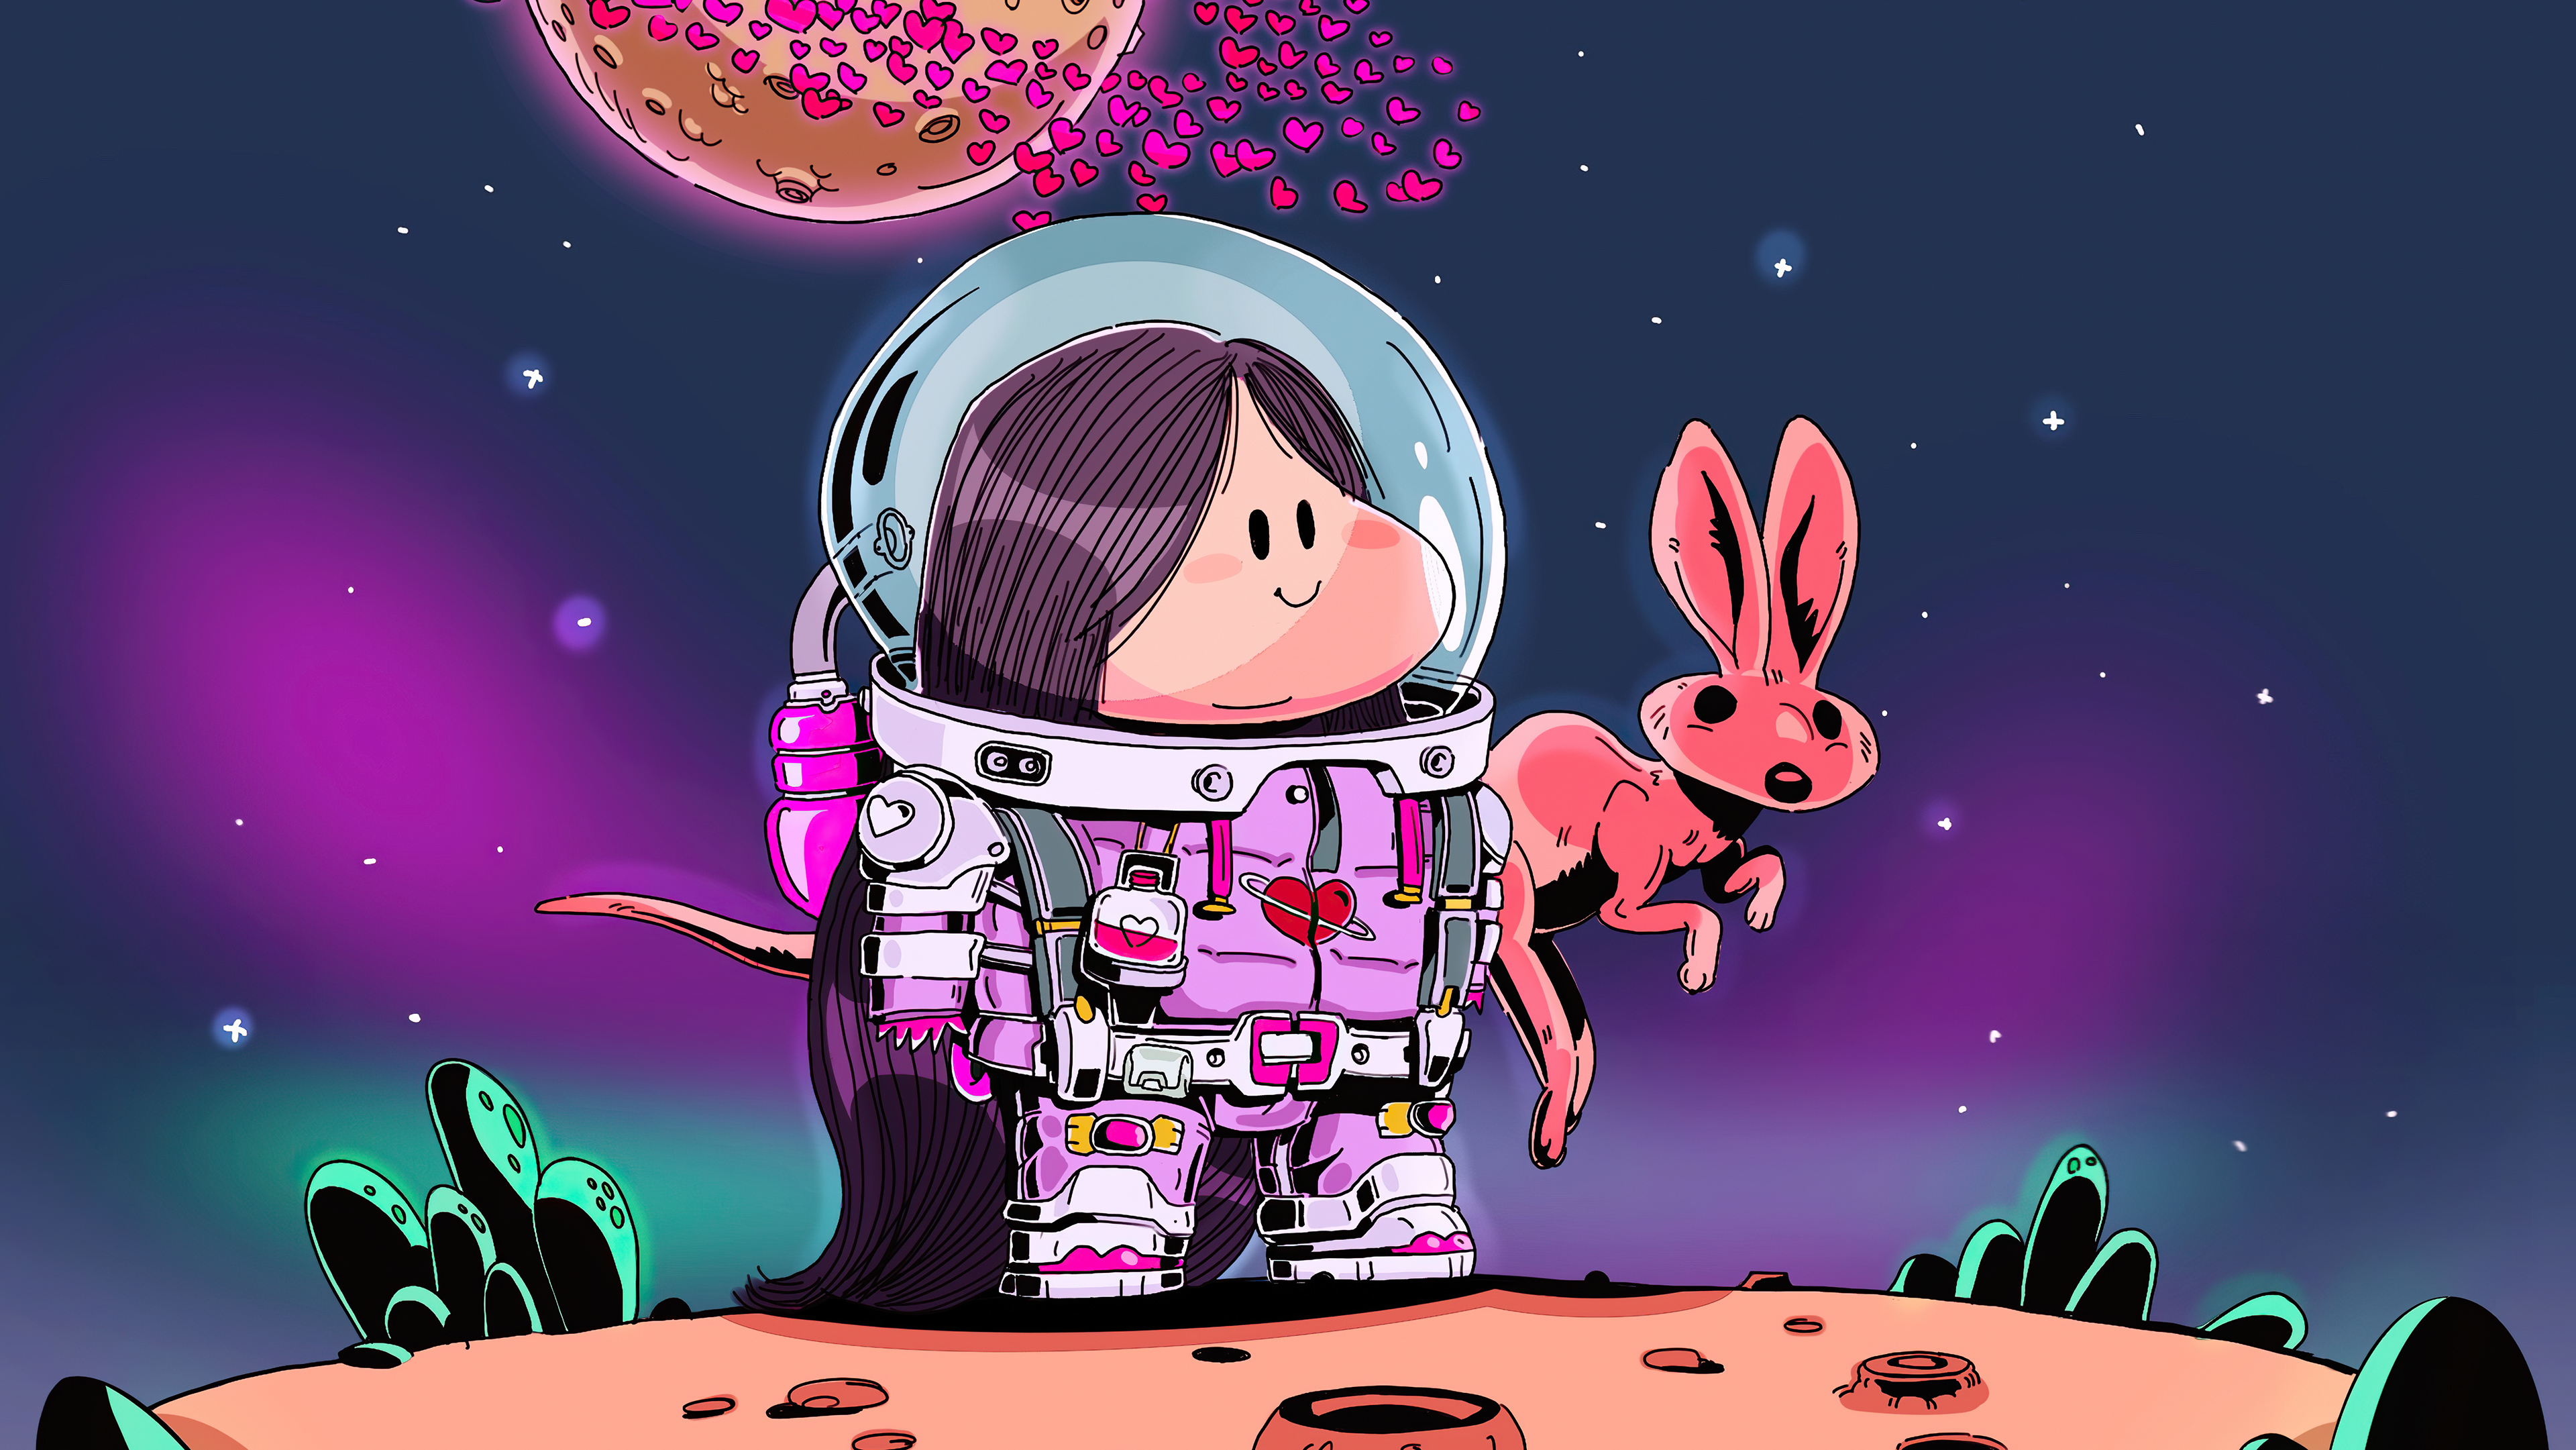 little maddy astronaut 4k 1614622554 - Little Maddy Astronaut 4k - Little Maddy Astronaut 4k wallpapers